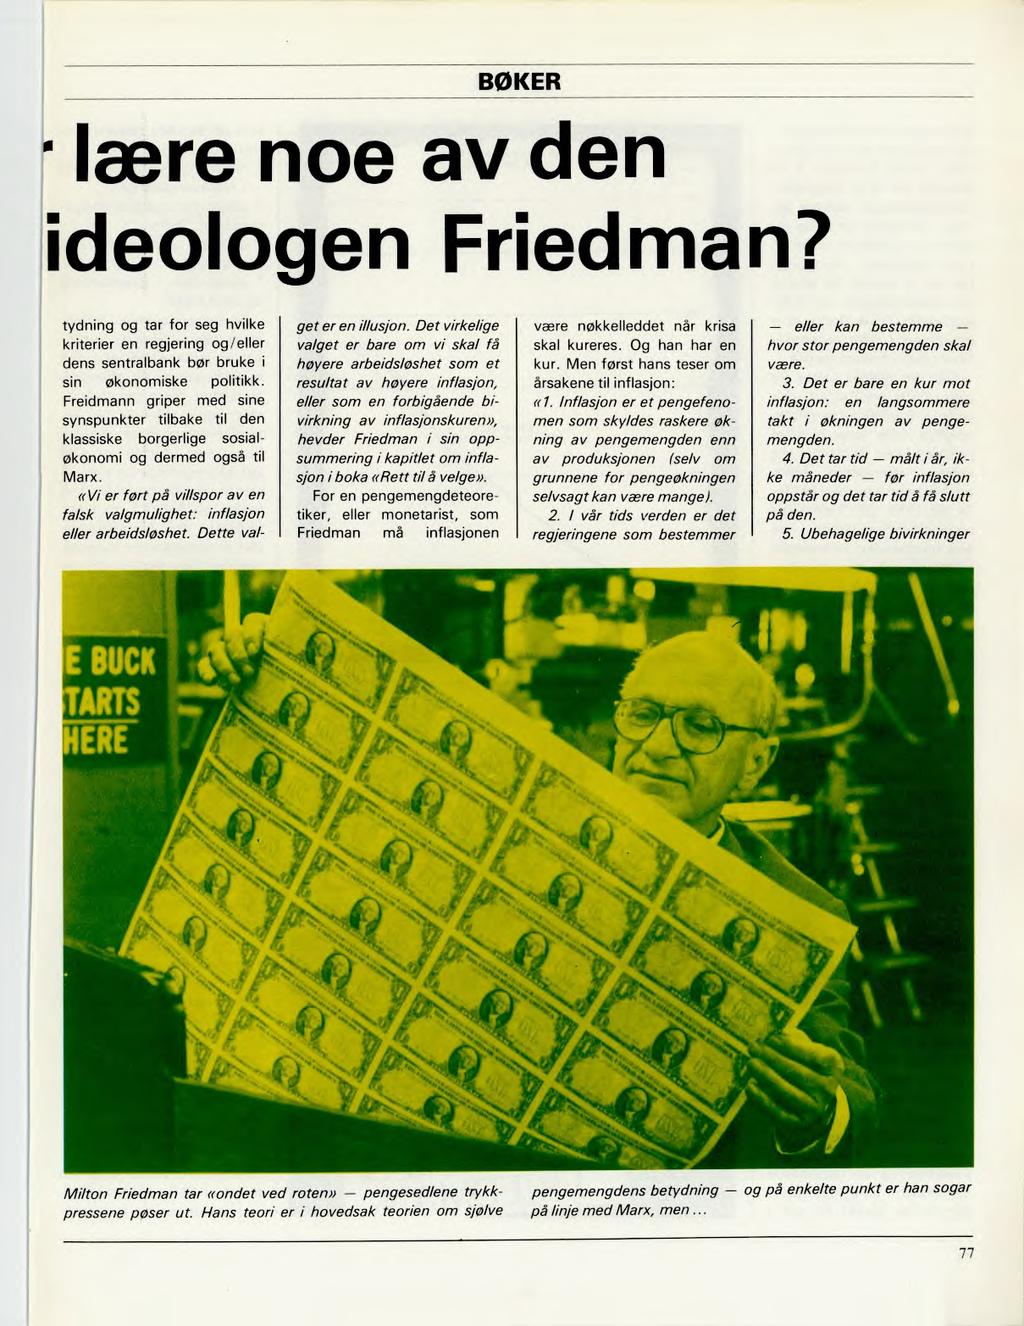 BØKER lære noe av den ideologen Friedman? tydning og tar for seg hvilke kriterier en regjering og /eller dens sentralbank bør bruke i sin økonomiske politikk.